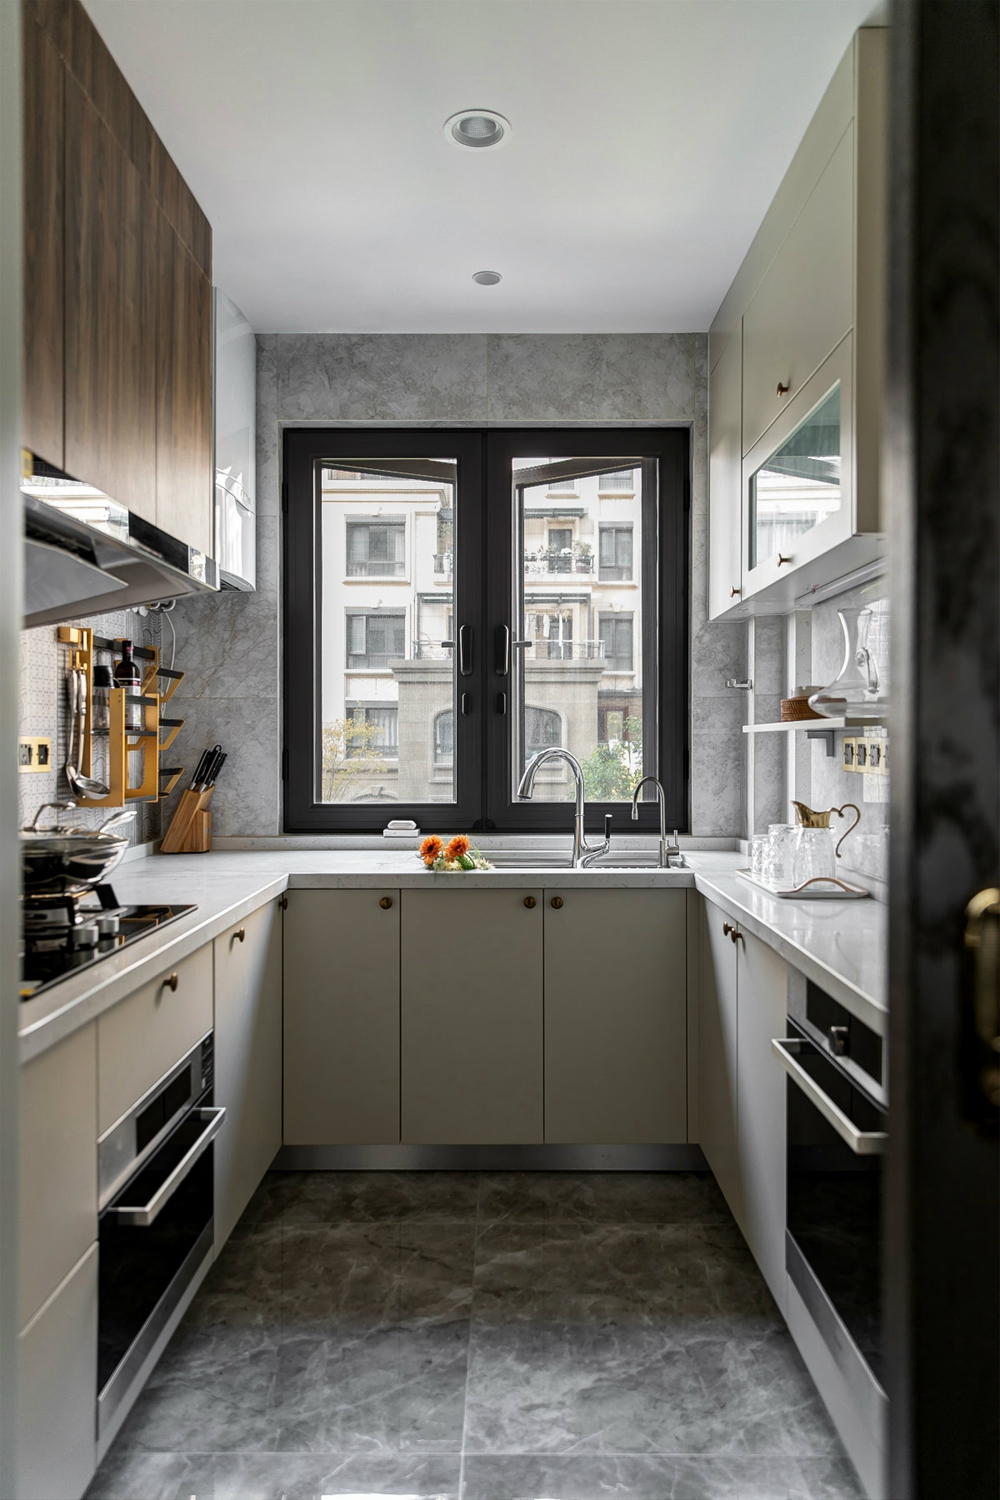 厨房空间简洁富有层次感，米色橱柜在白色背景中使空间显得更加温馨自然。